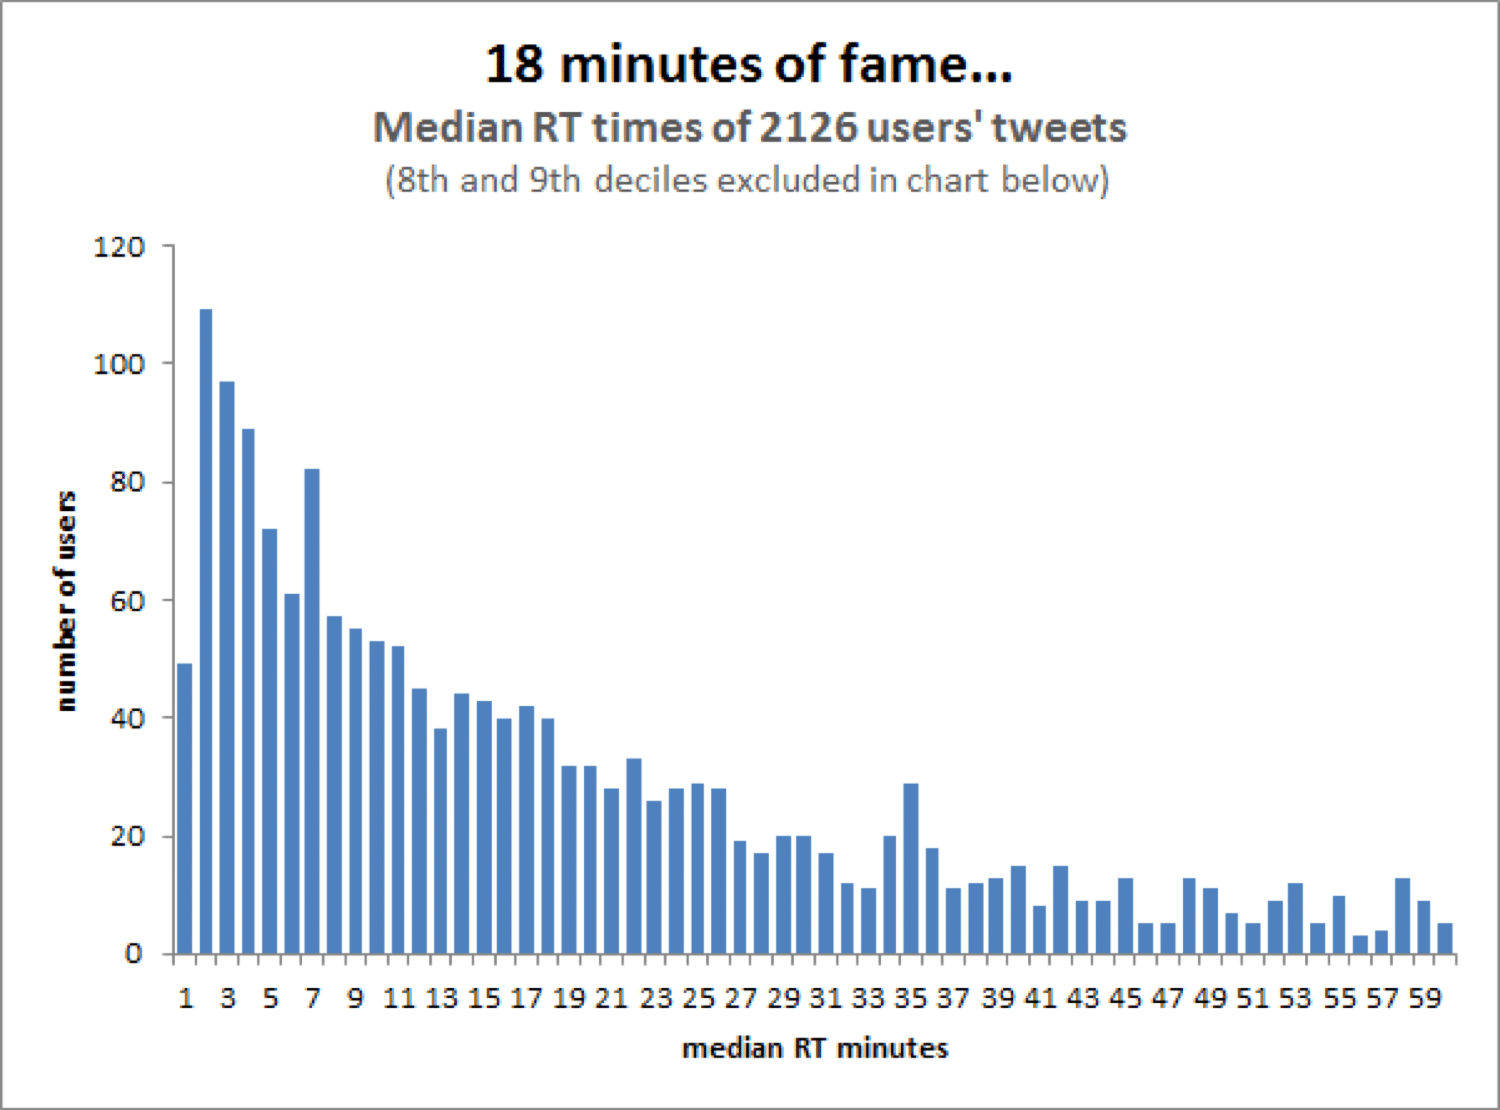 Average lifespan of a tweet according to Moz